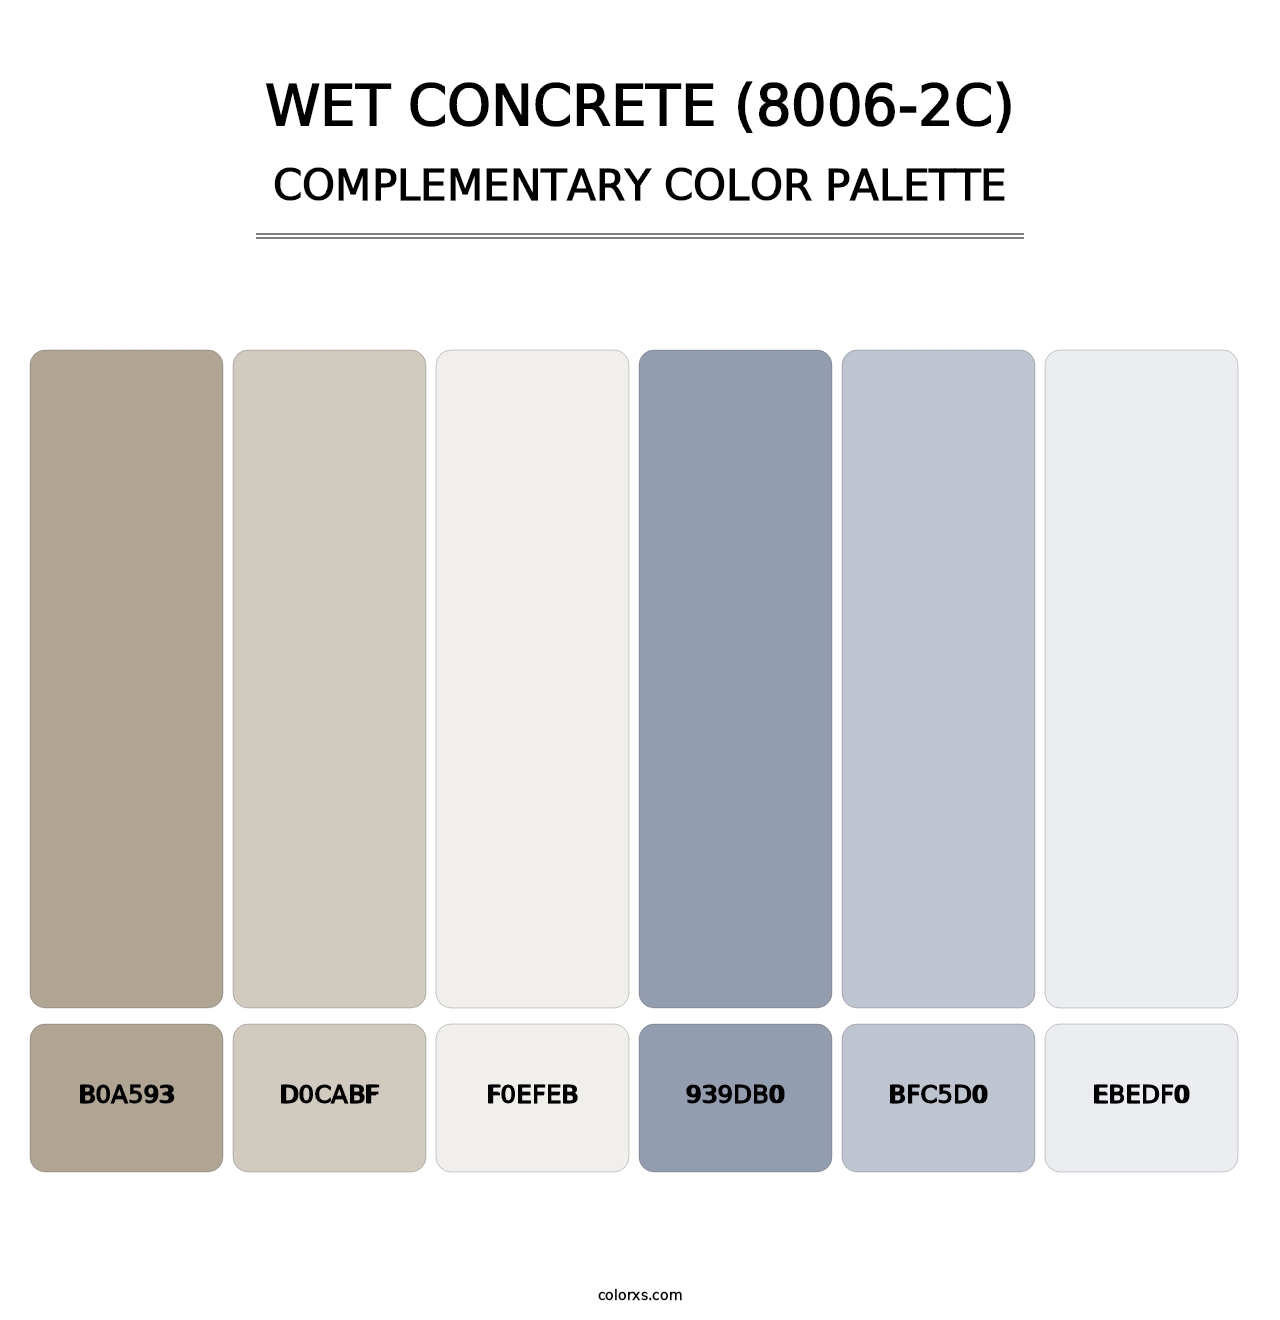 Wet Concrete (8006-2C) - Complementary Color Palette